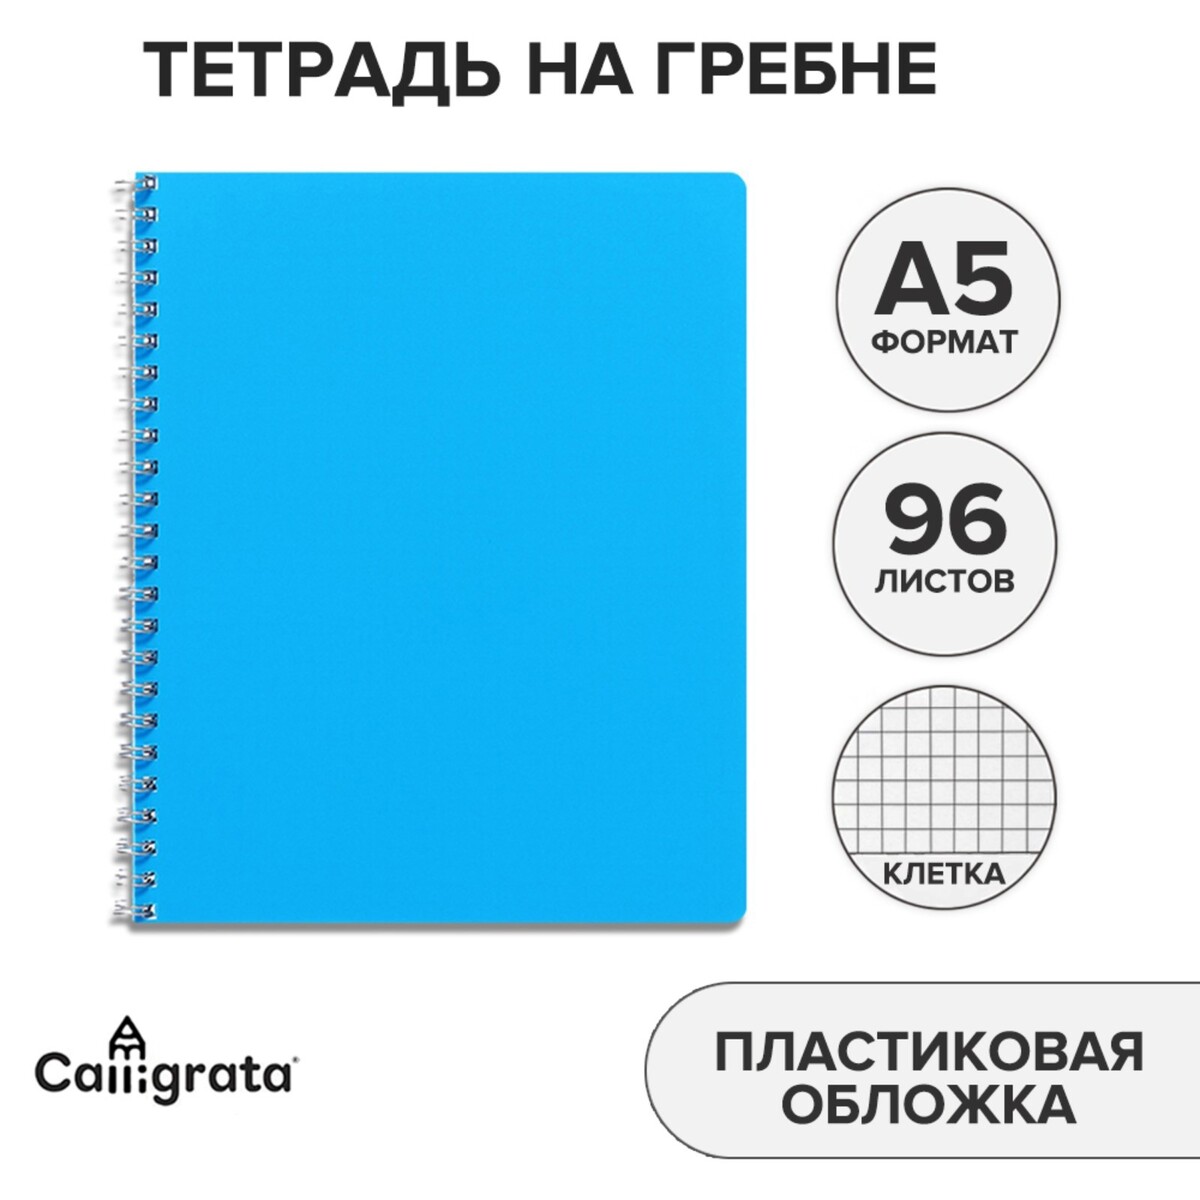 Тетрадь на гребне a5 96 листов в клетку calligrata голубая, пластиковая обложка, блок офсет